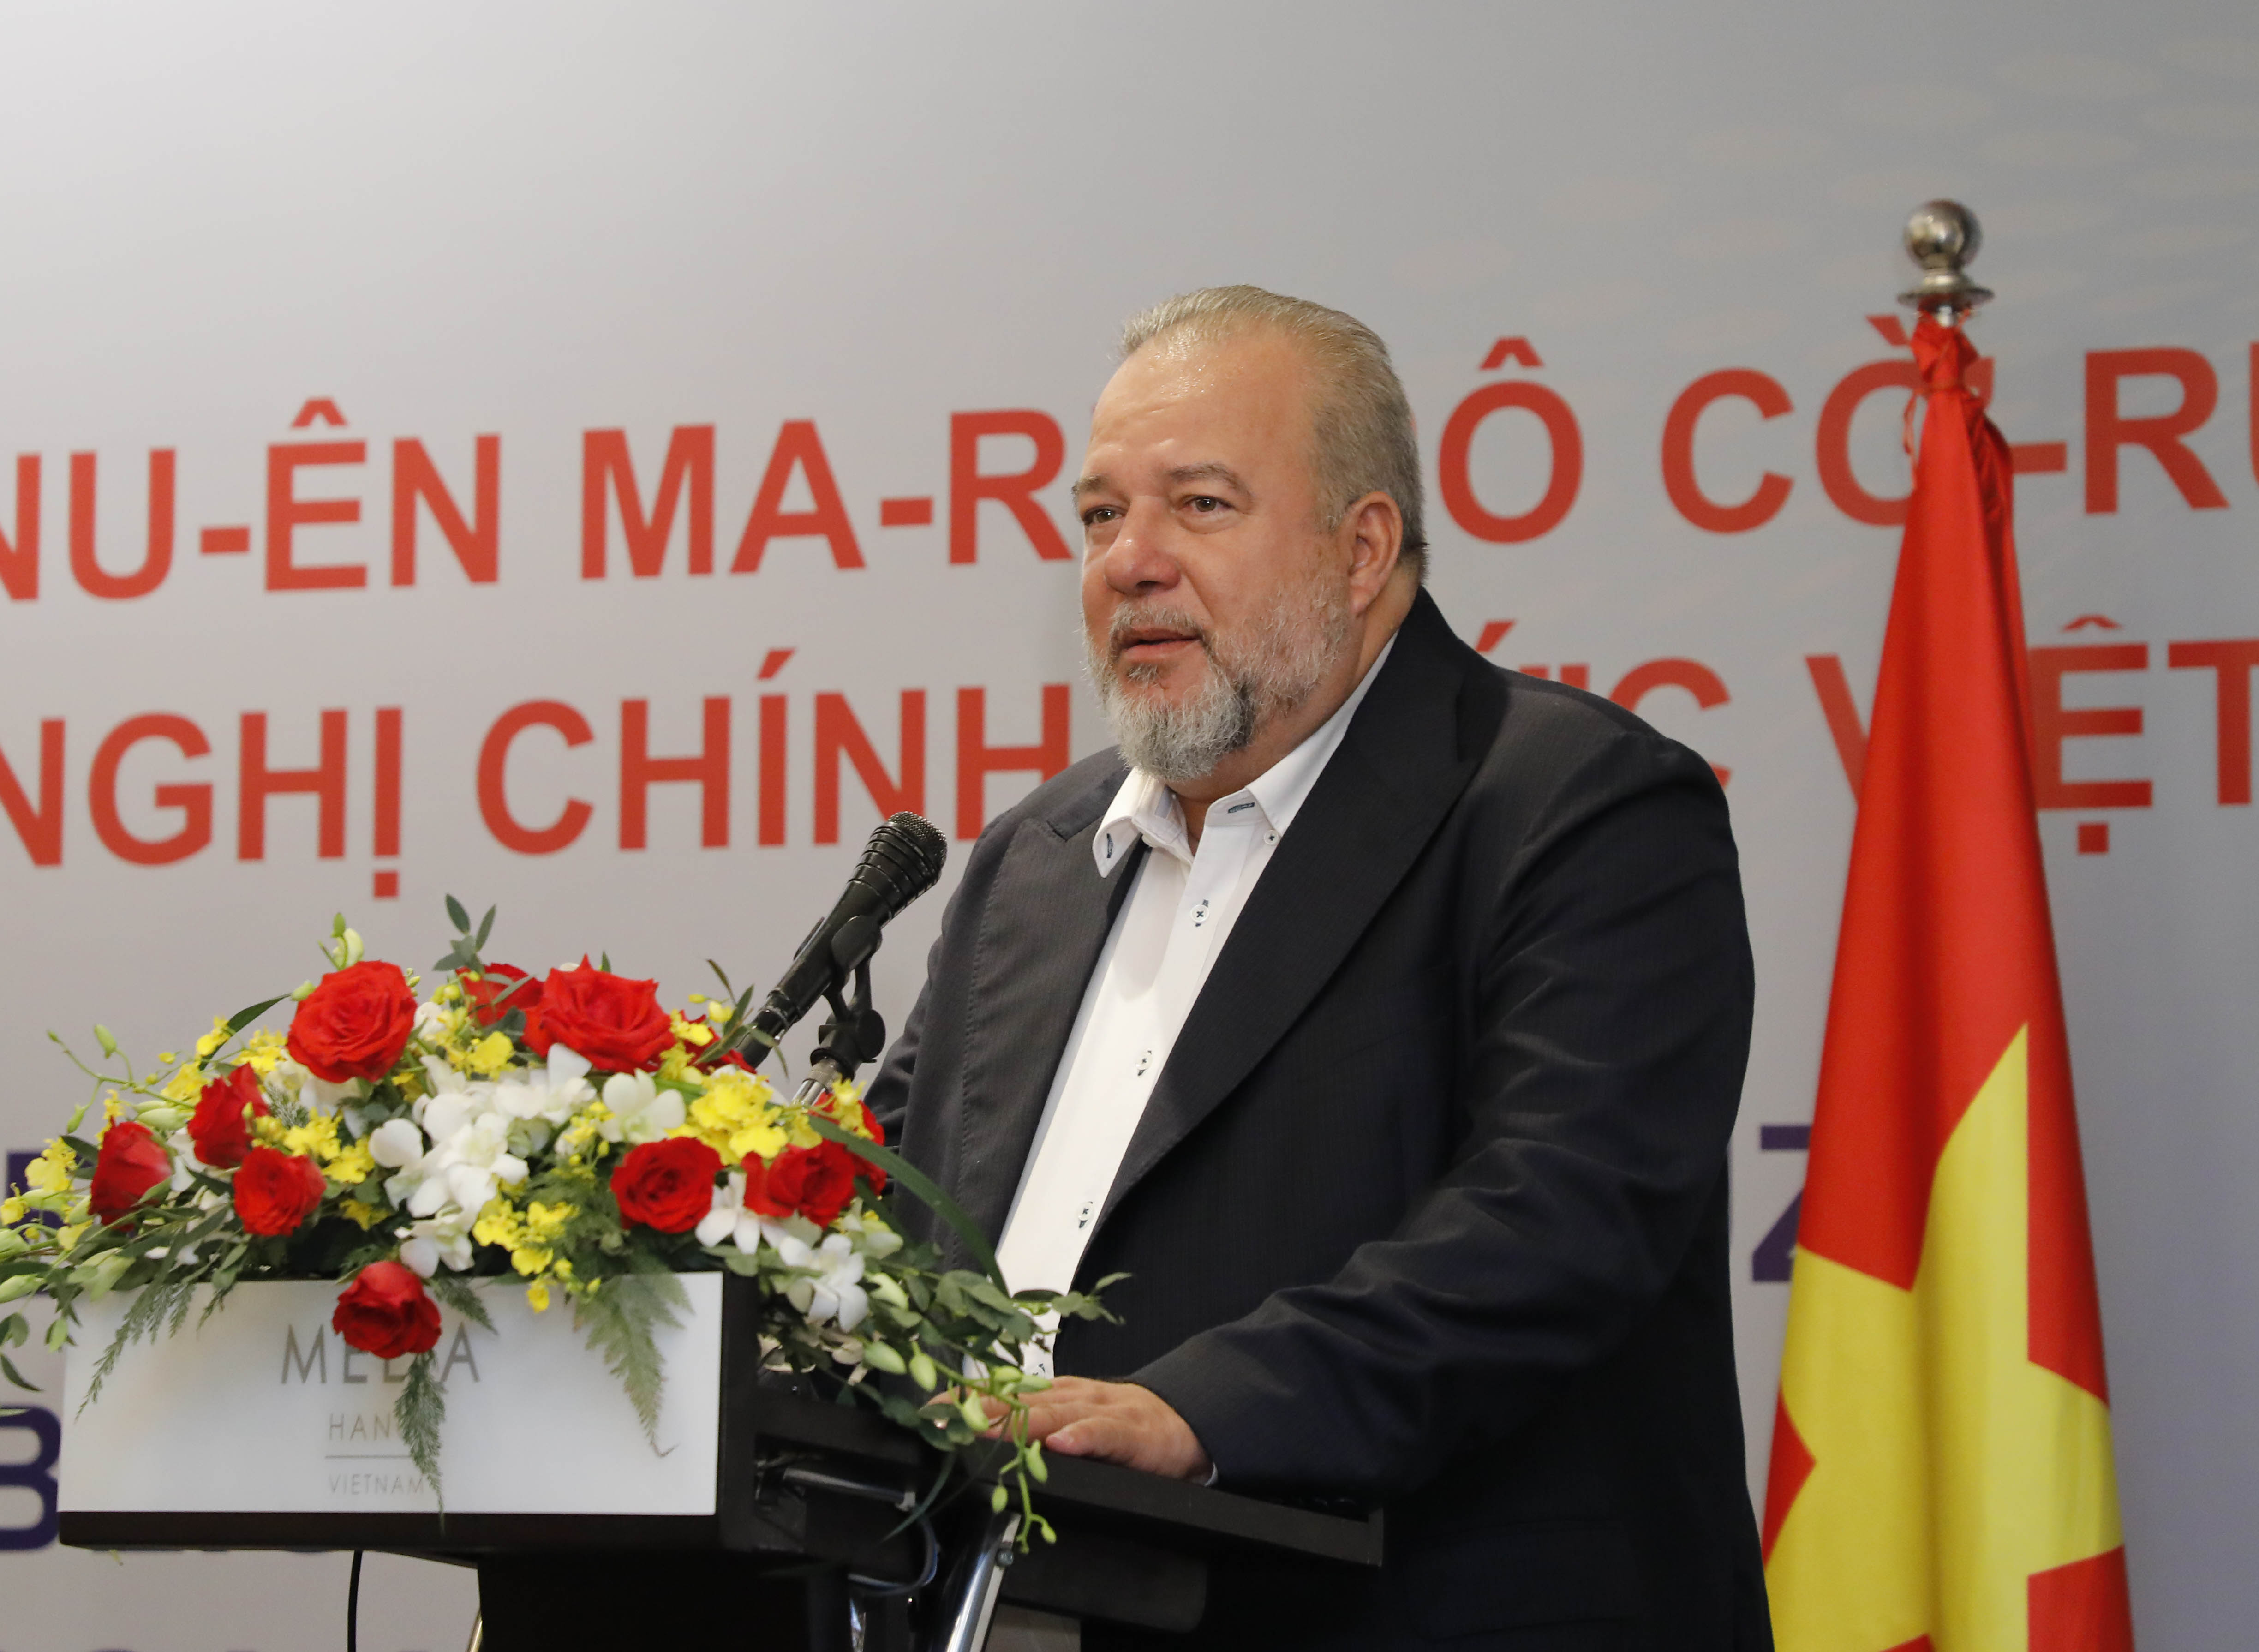 Thủ tướng Cuba tiếp thân mật Lãnh đạo Liên hiệp Các tổ chức hữu nghị Việt Nam và Hội Hữu nghị Việt Nam - Cuba -0